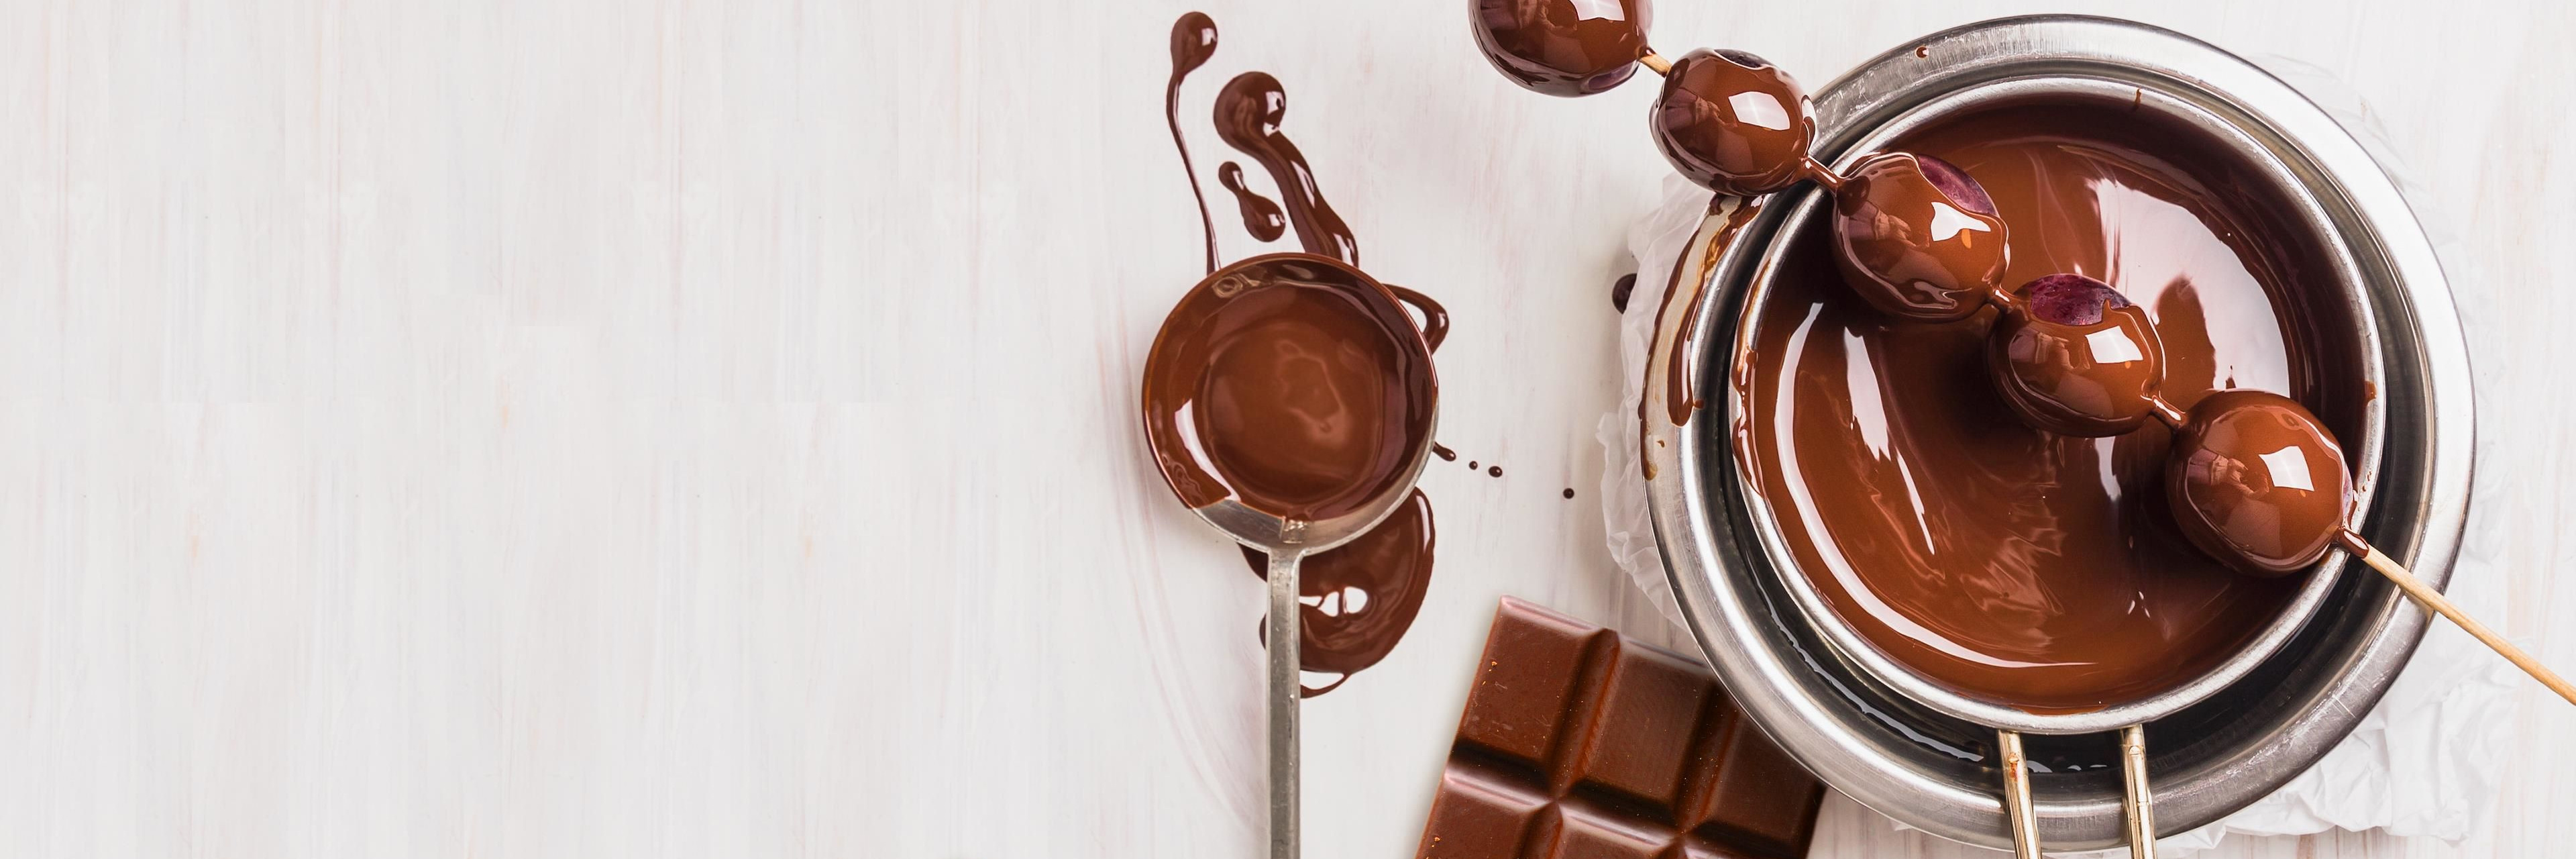 zelf Niet doen Madeliefje Chocolade smelten | Bakken.nl